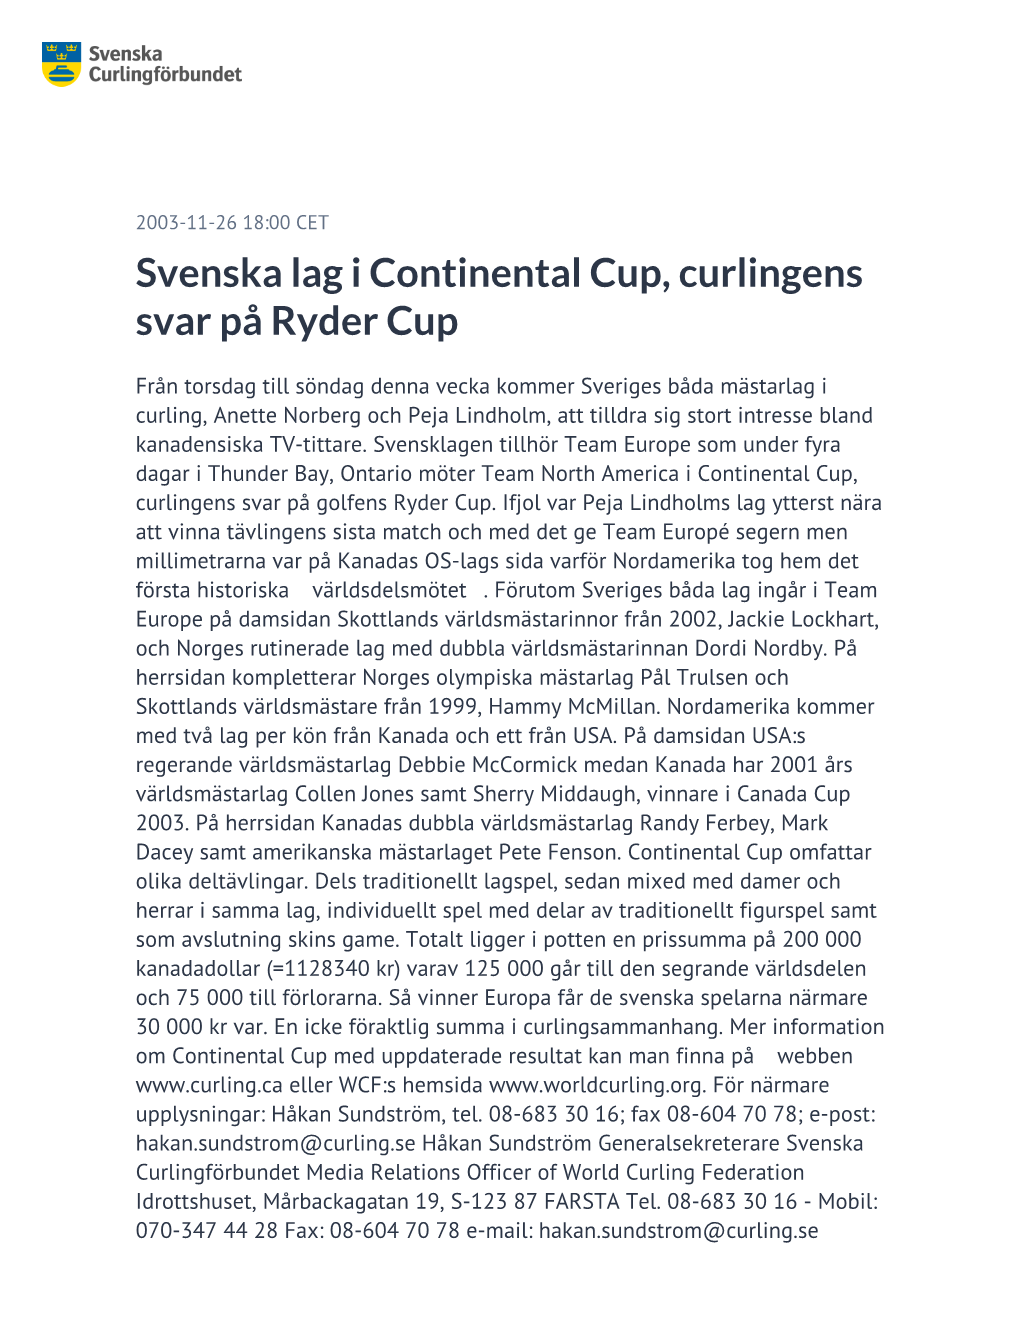 Svenska Lag I Continental Cup, Curlingens Svar På Ryder Cup